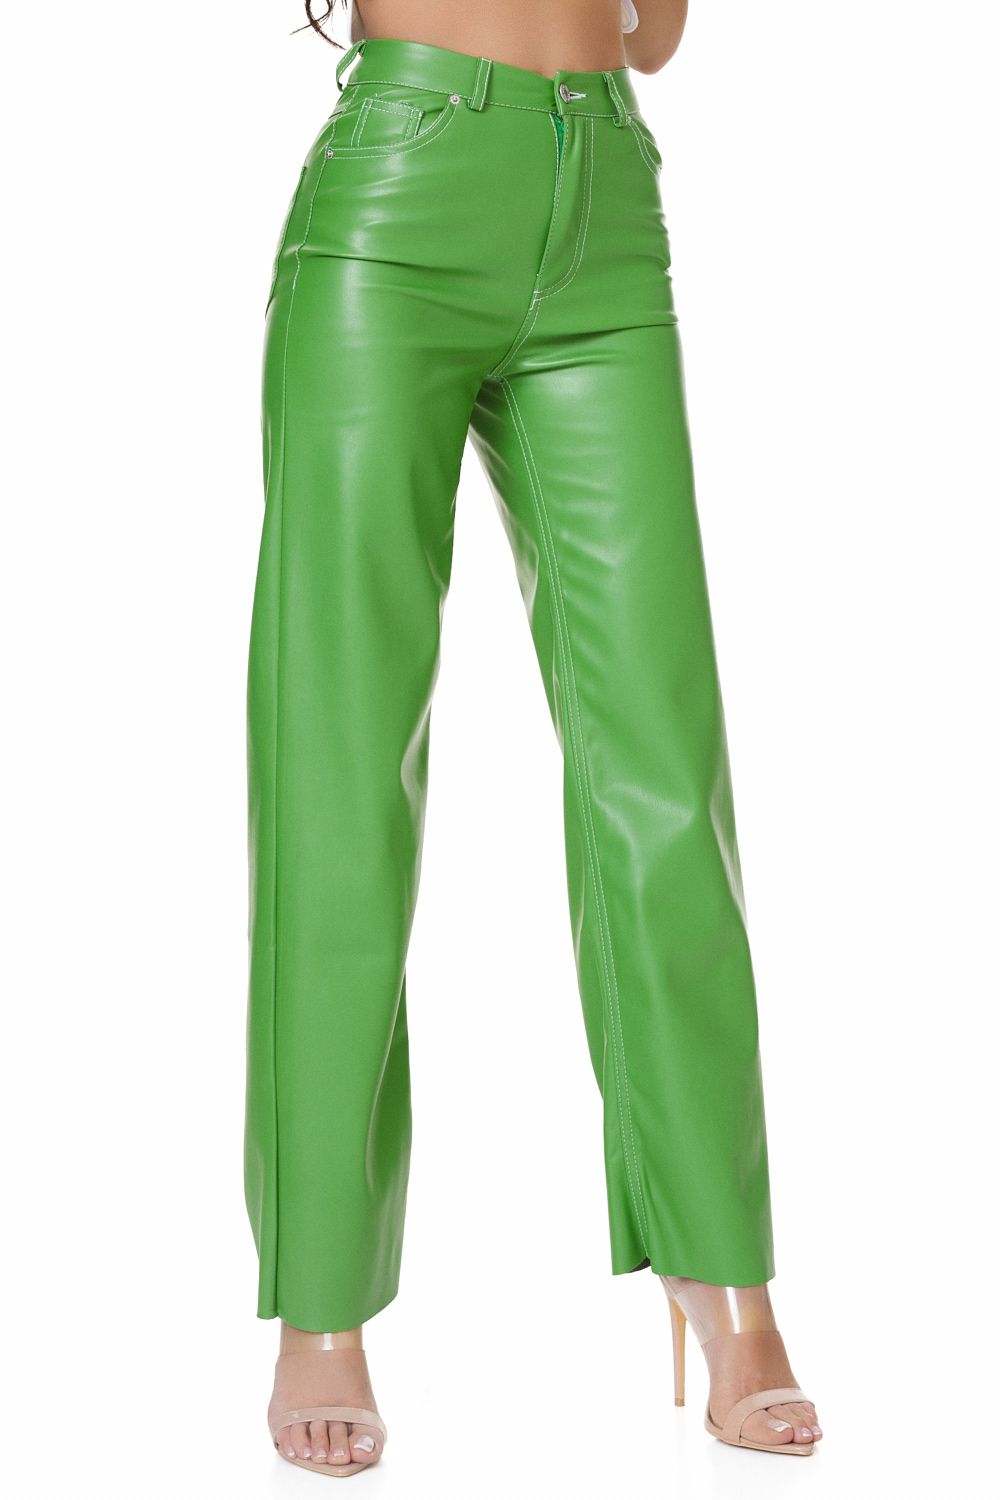 Relisa Bogas elegáns zöld női nadrág